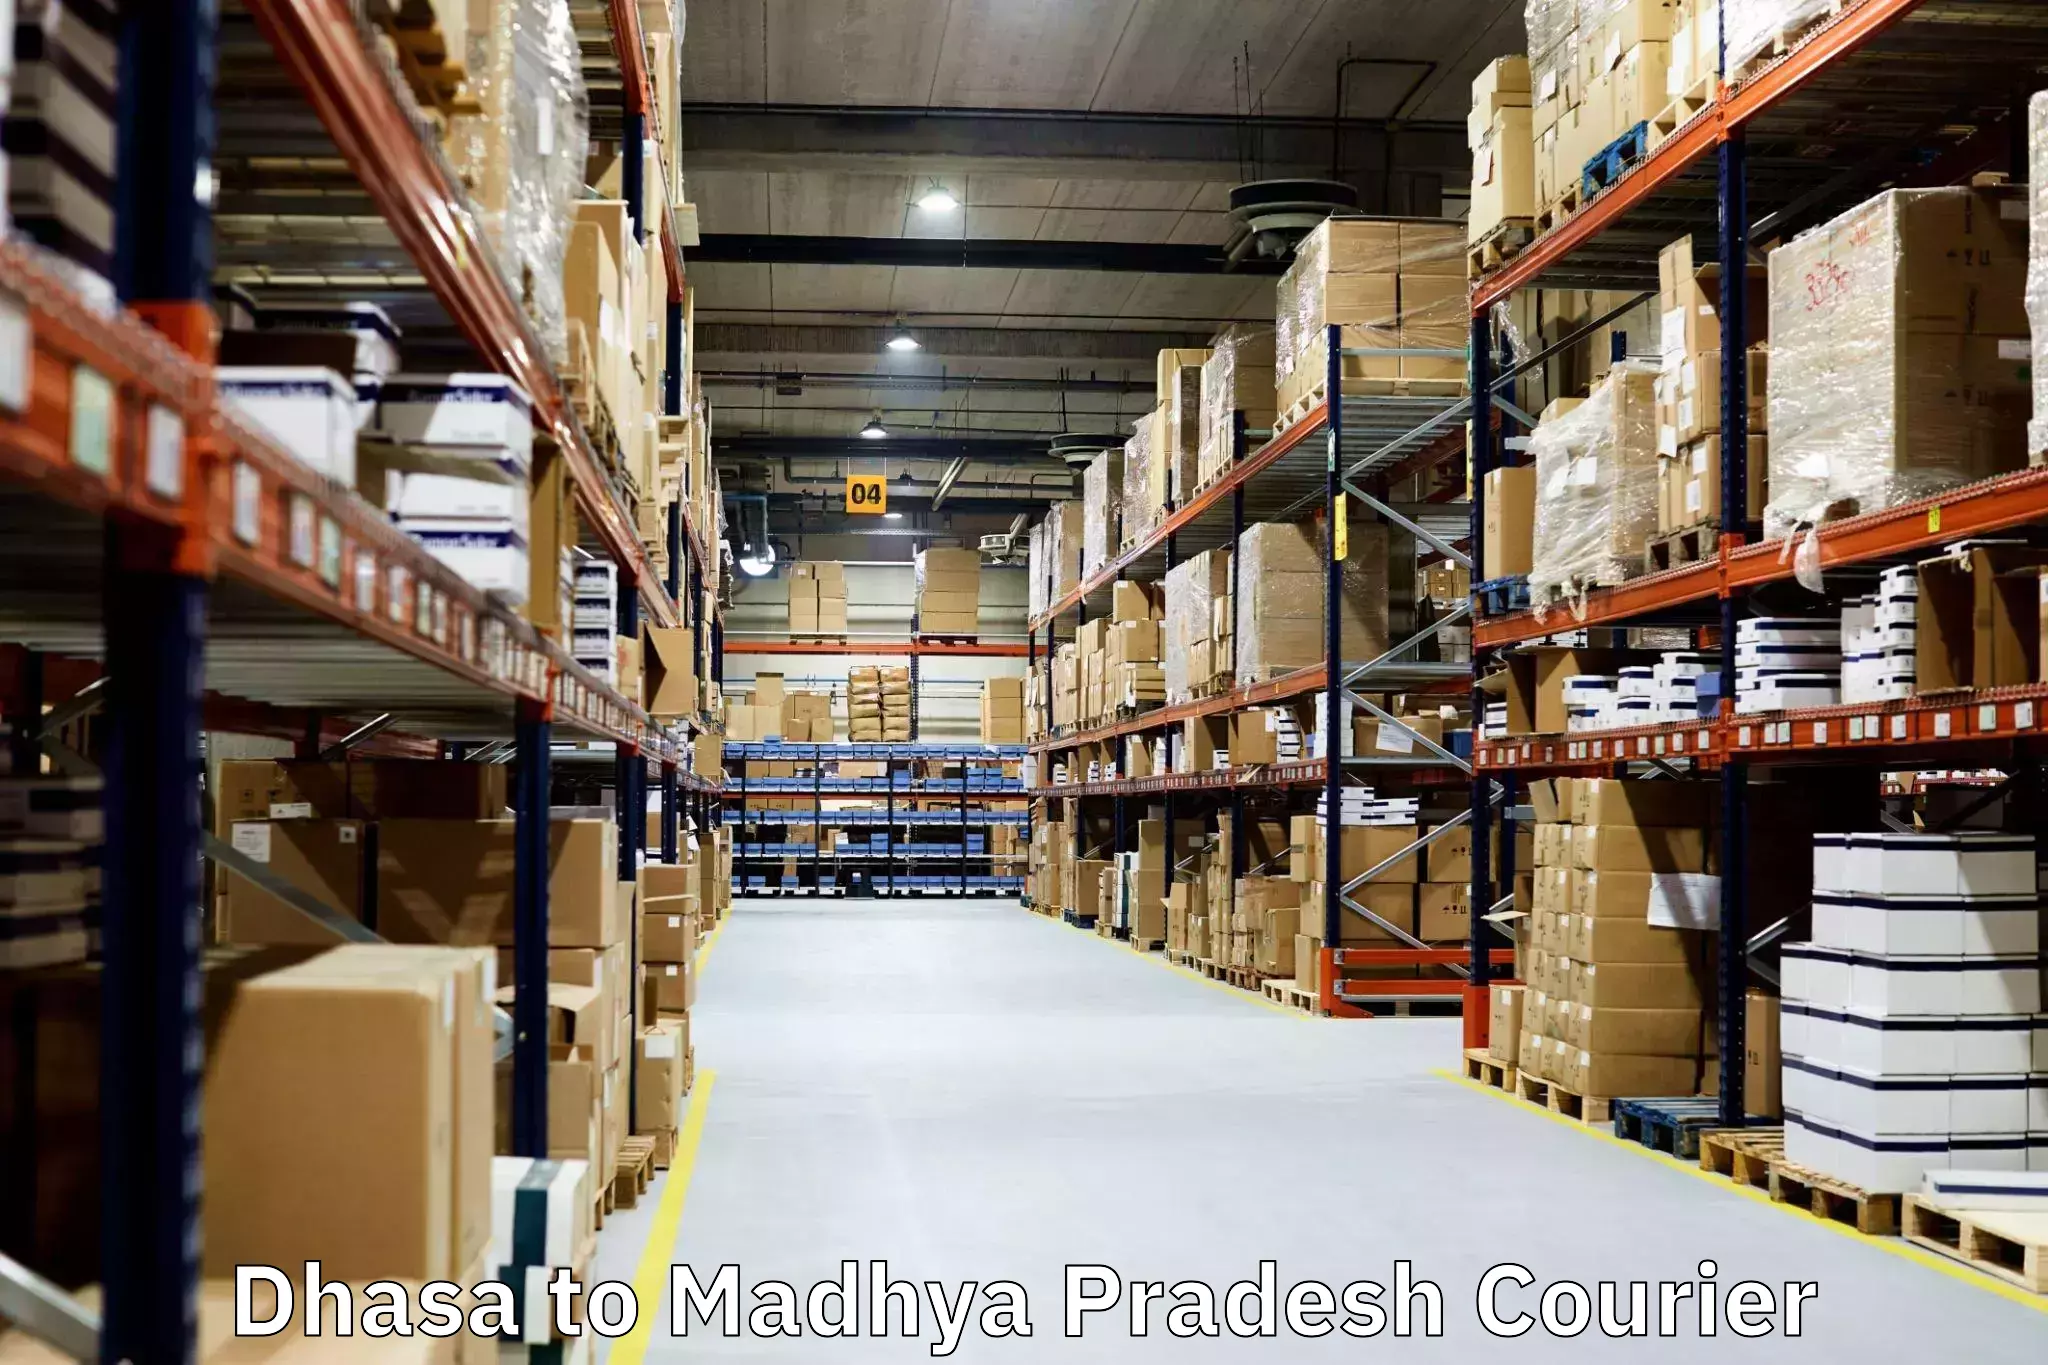 Quality moving company Dhasa to Madhya Pradesh